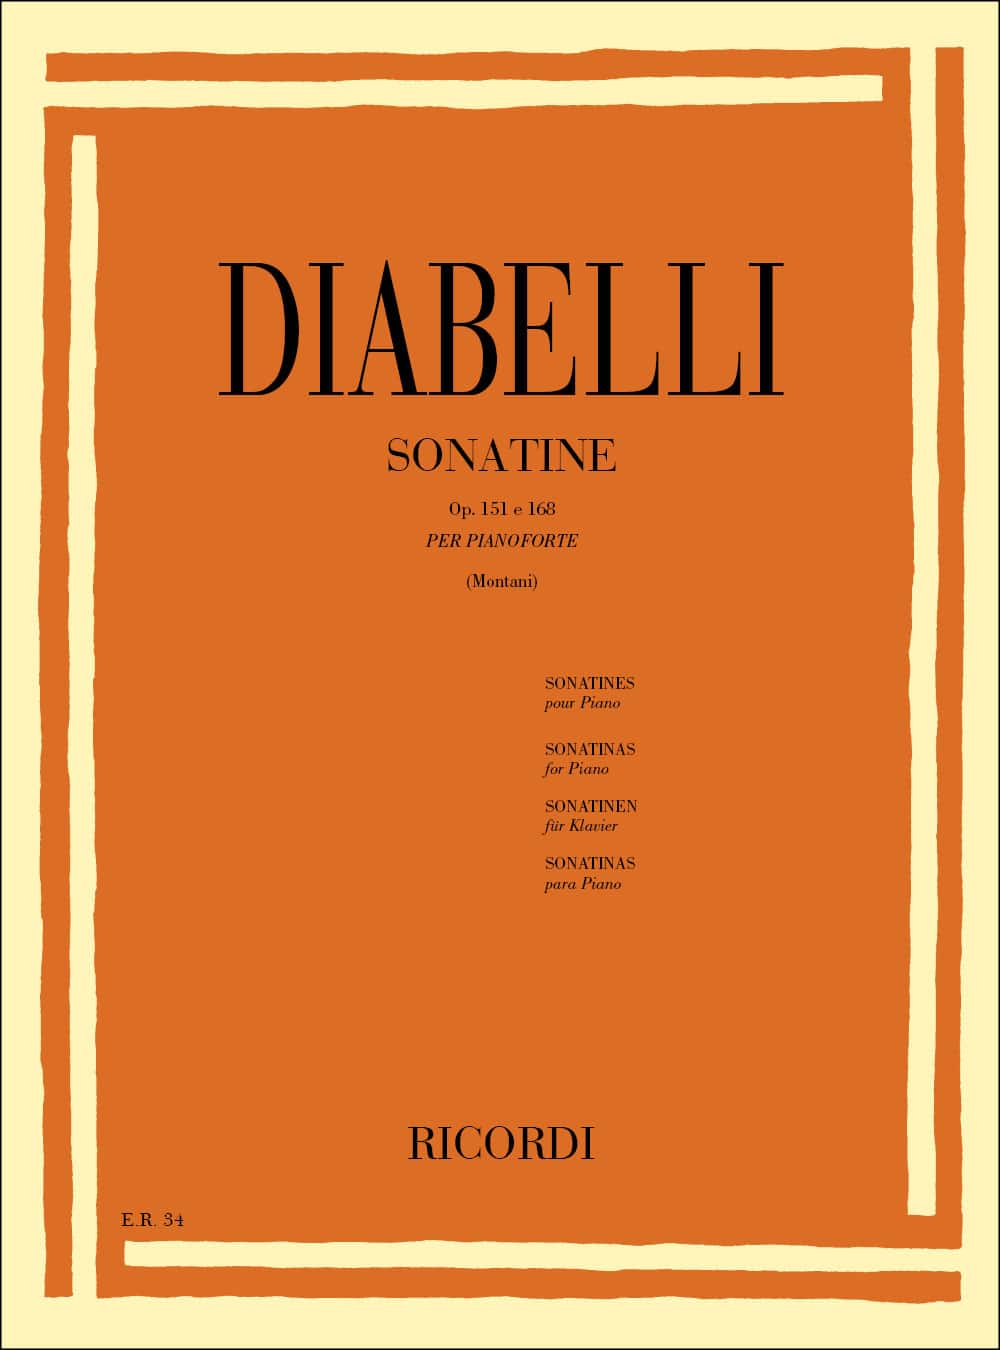 RICORDI DIABELLI A. - 11 SONATINE OP. 151 E 168 - PIANO